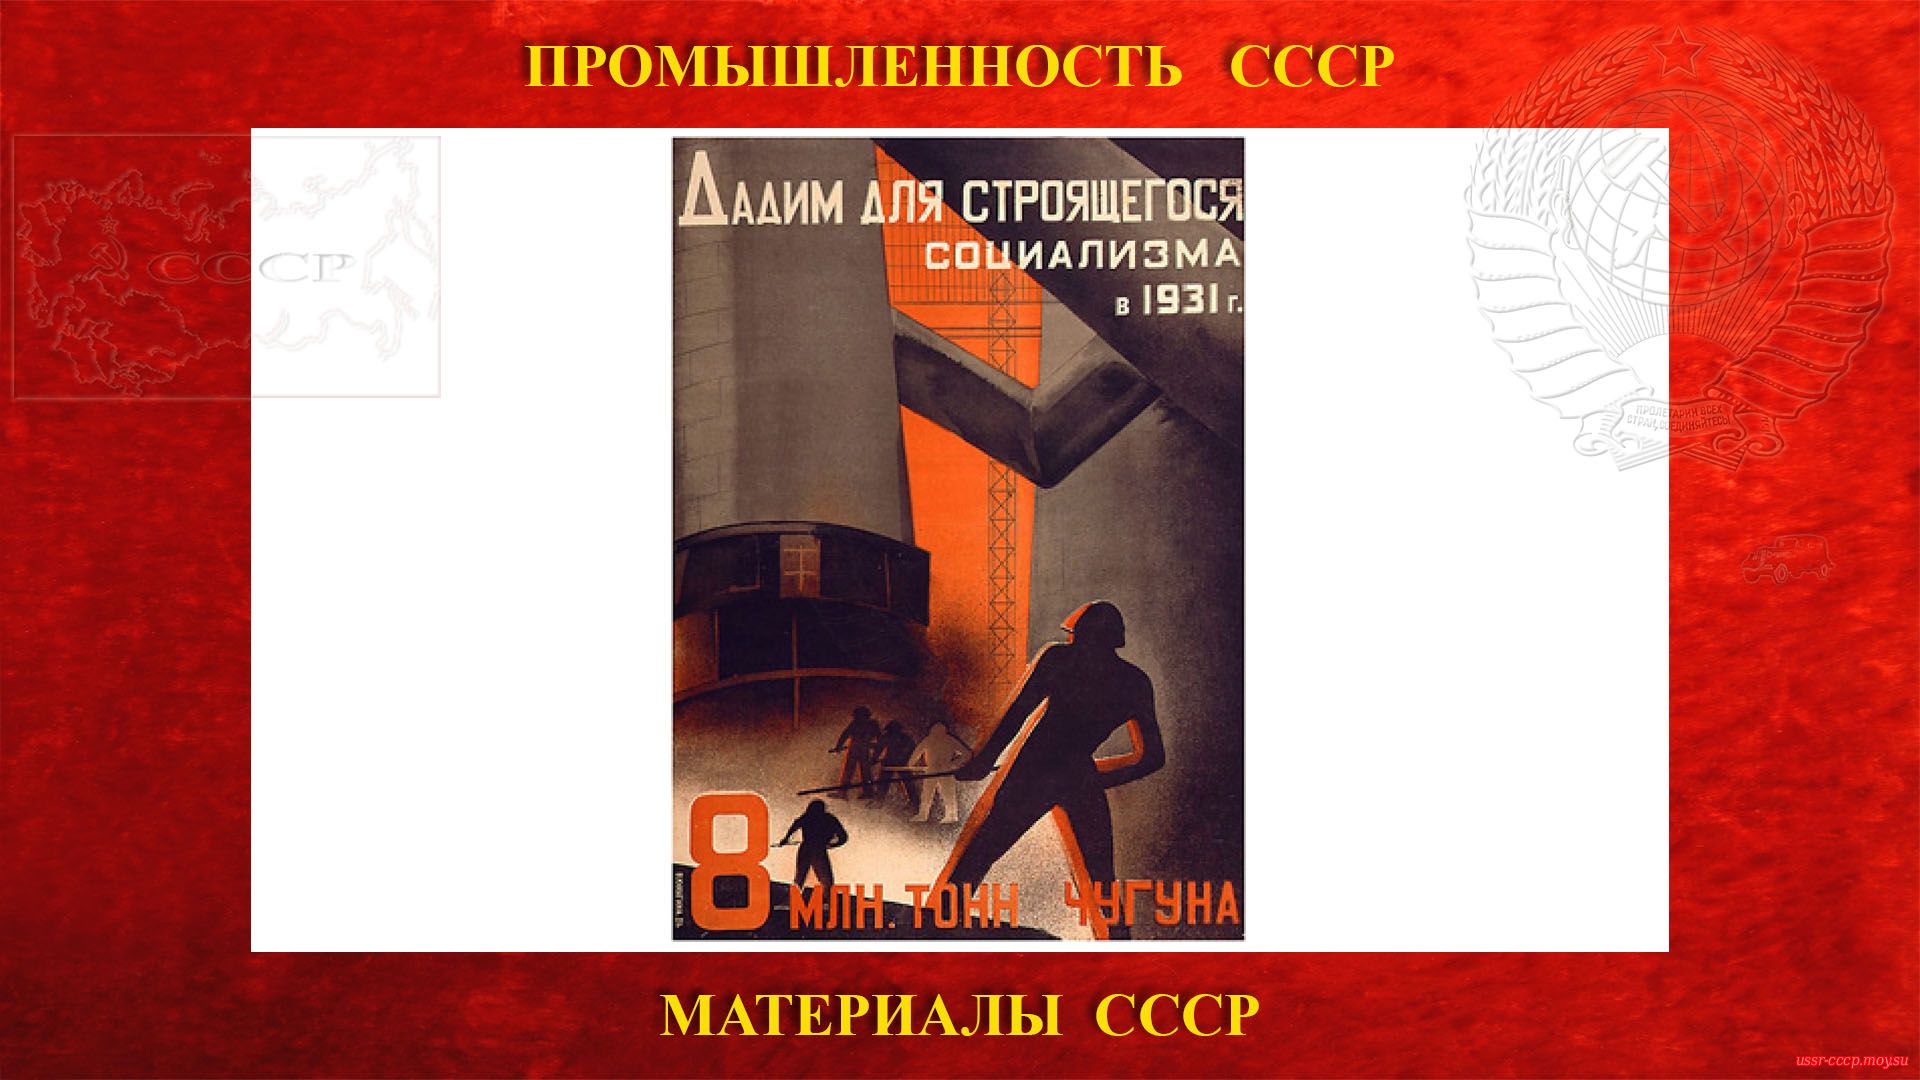 Дадим для строящегося социализма в 1931 г. 8 млн. тонн чугуна (плакат СССР).